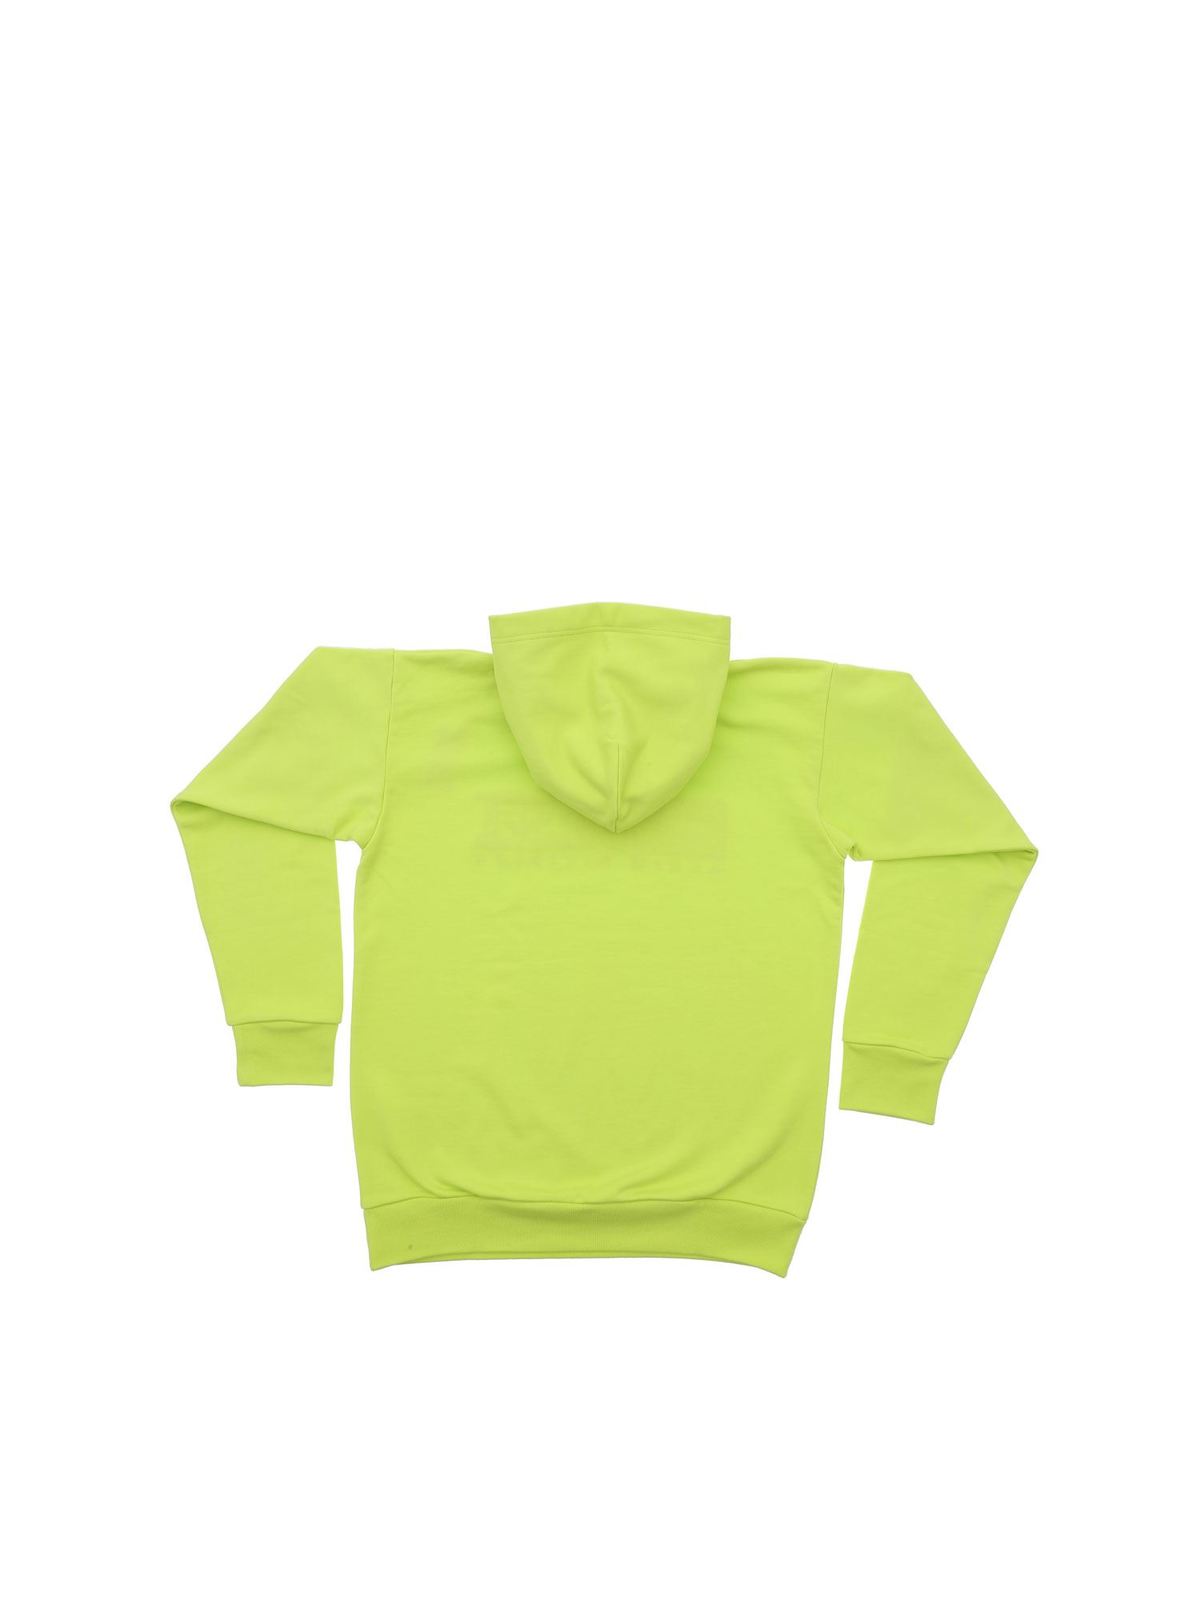 green sweatshirts